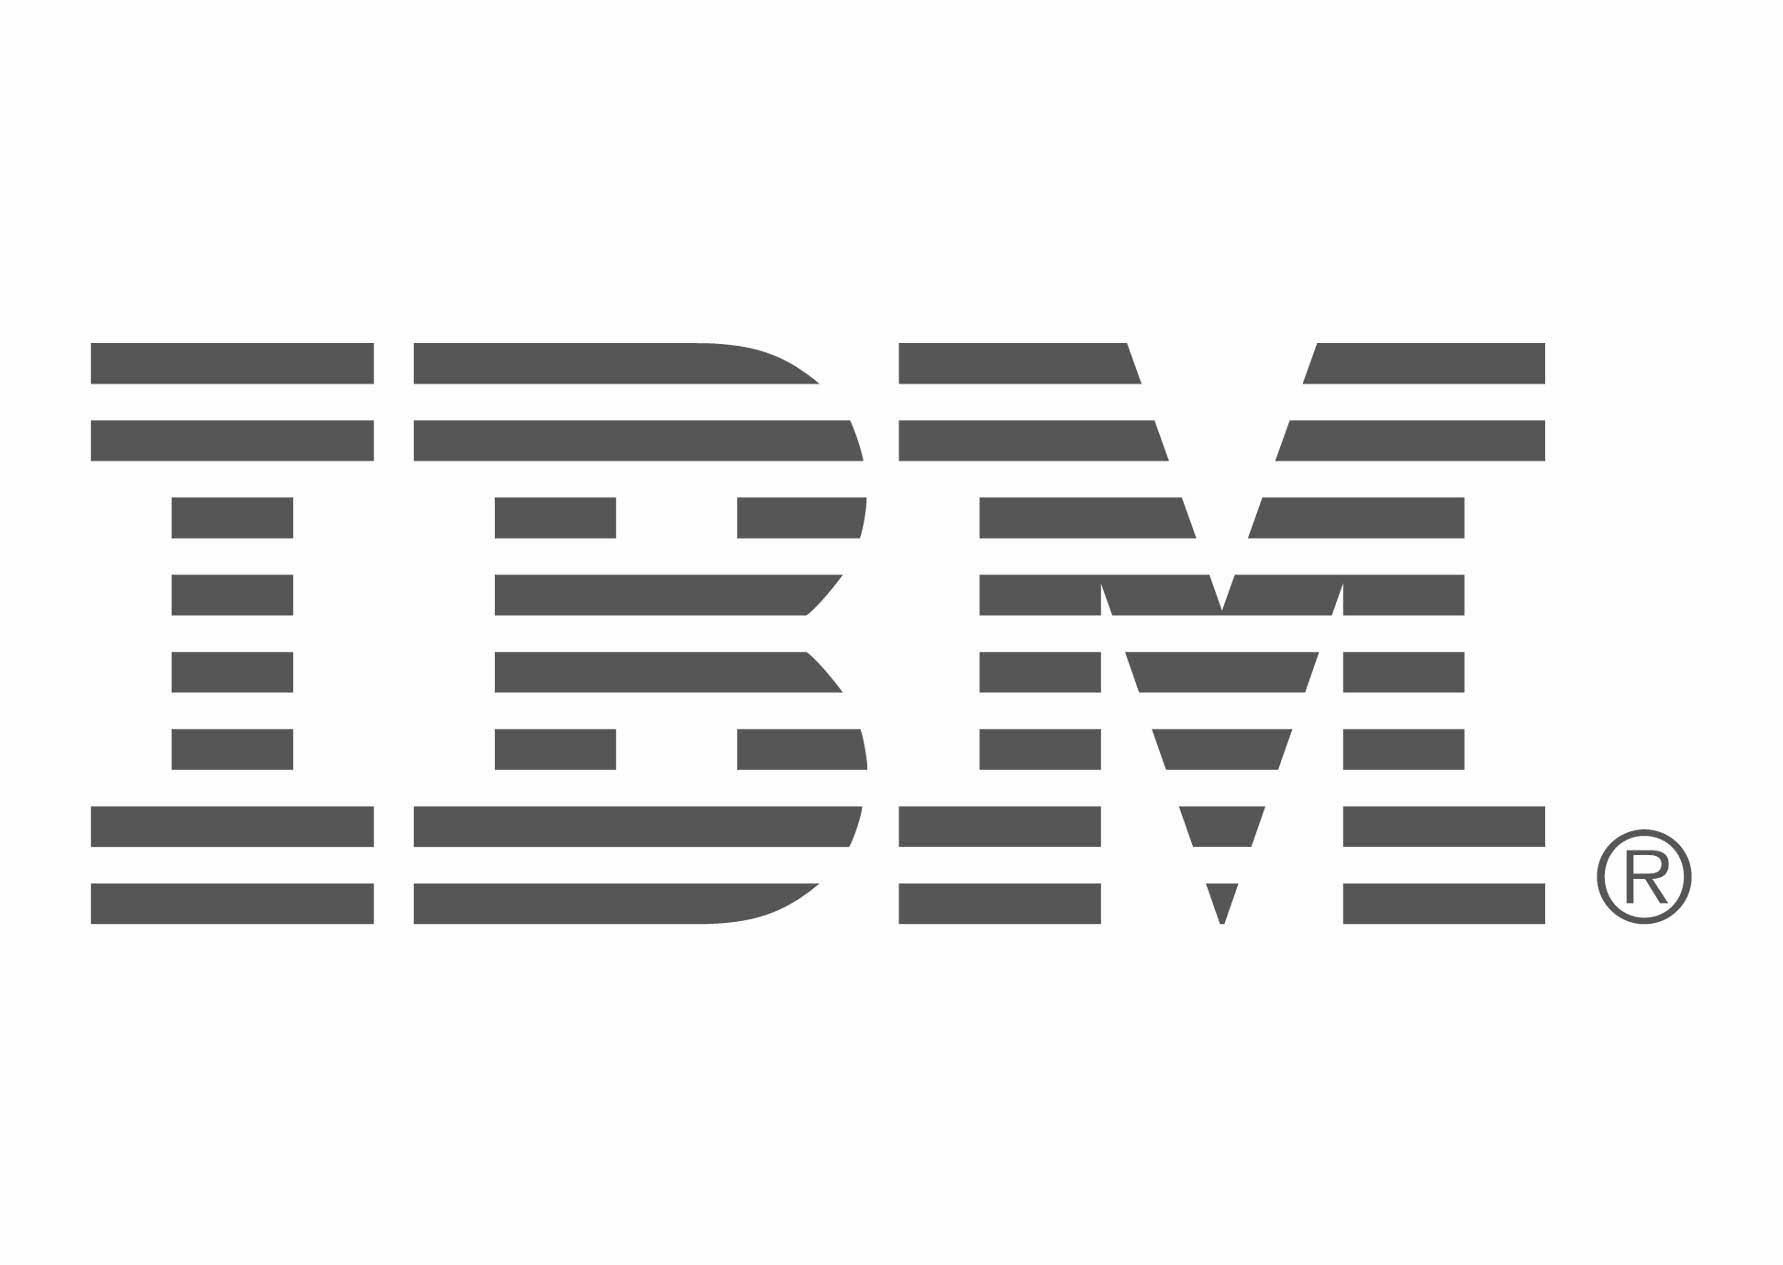 Ibm downloads. IBM. IBM логотип. Логотип ИБМ. IBM лого прозрачный фон.